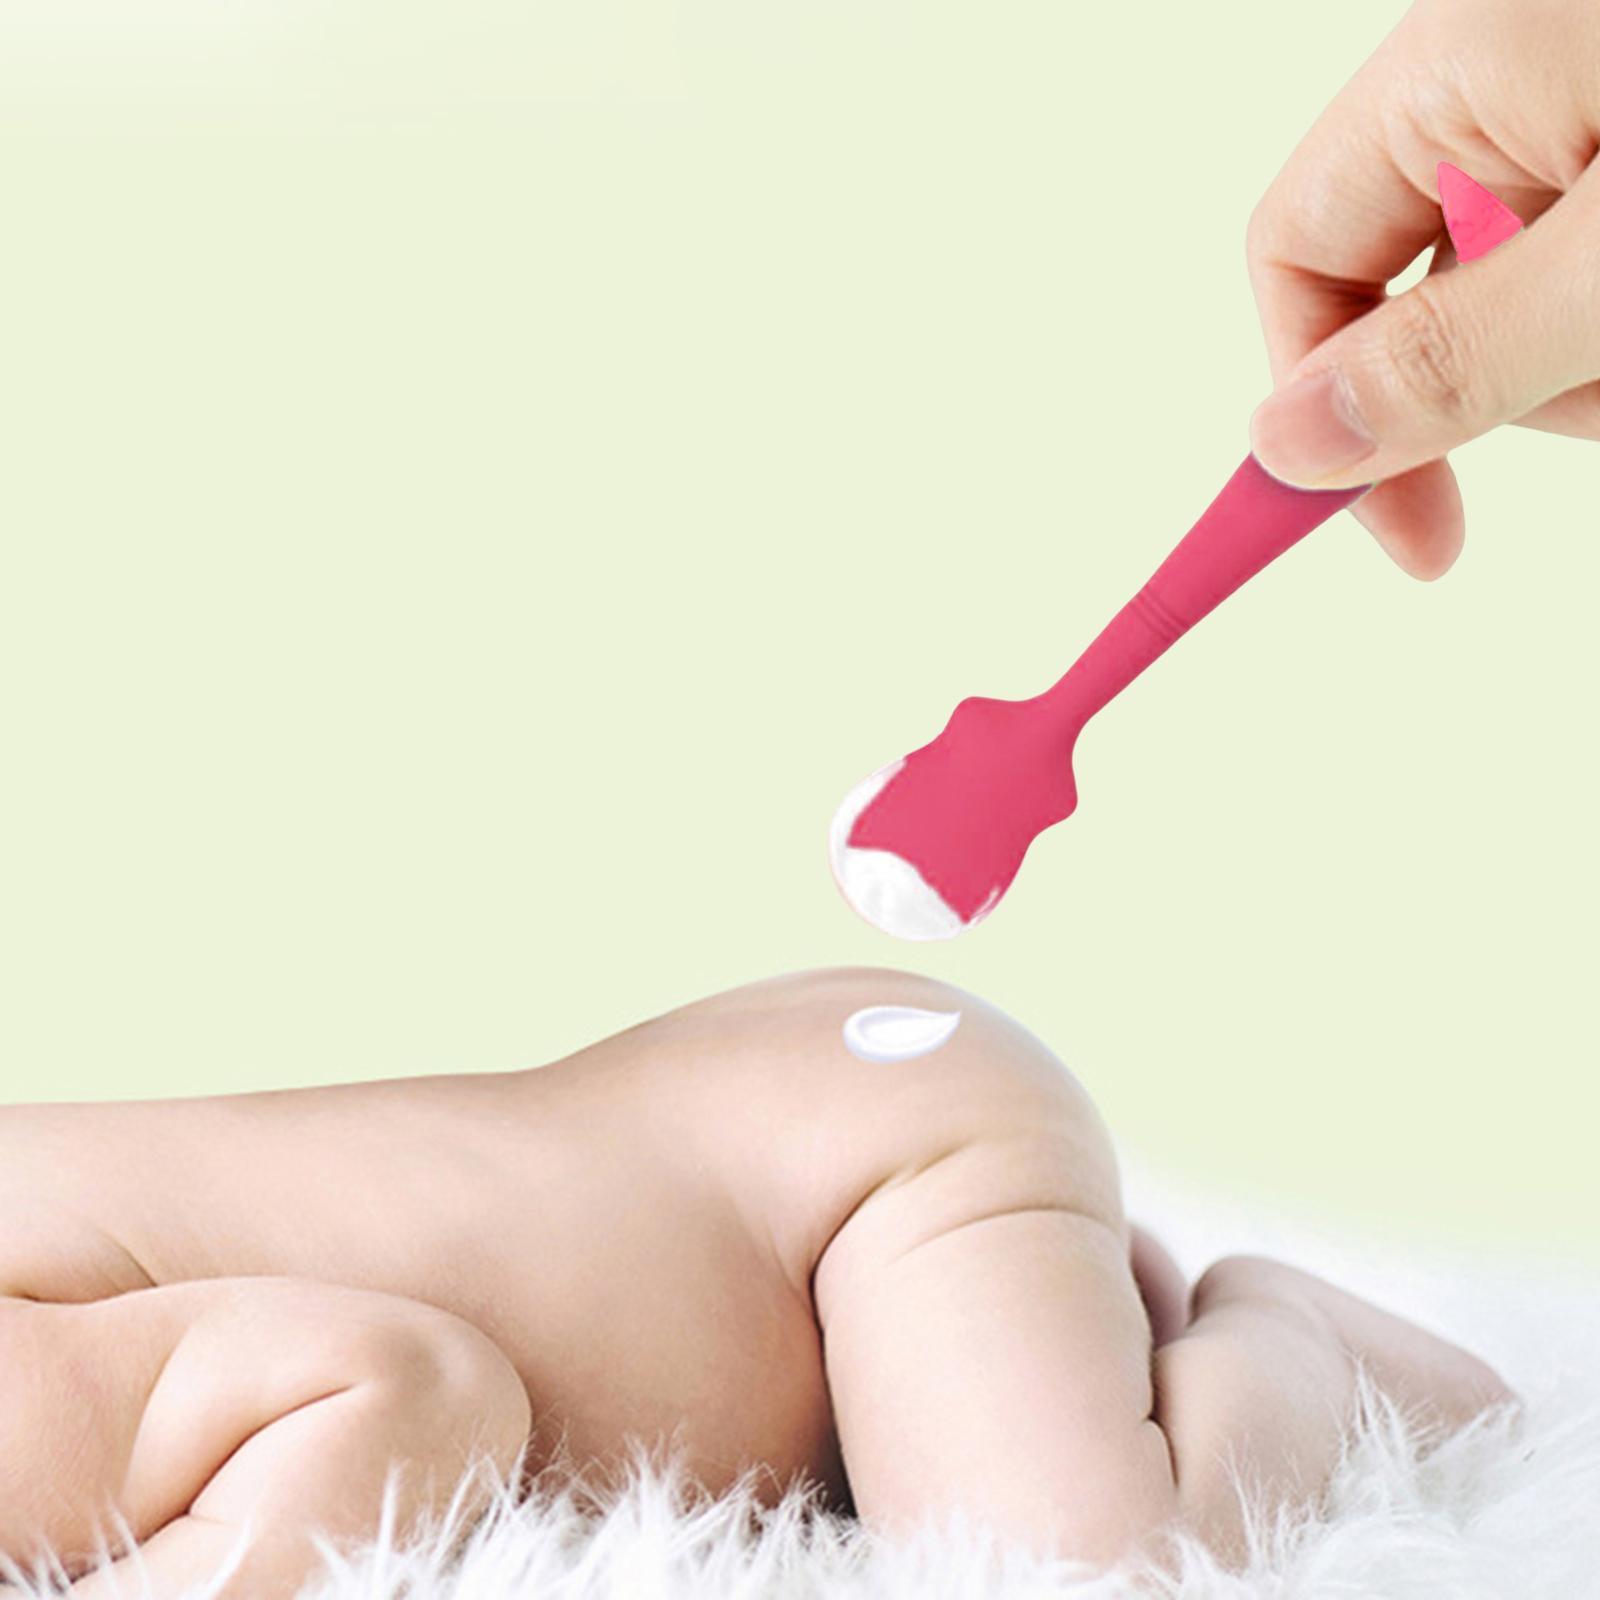 Diaper Cream Spatula Mini Rash Cream Brush, Cream Spatula Applicator for Baby Holiday Gifts